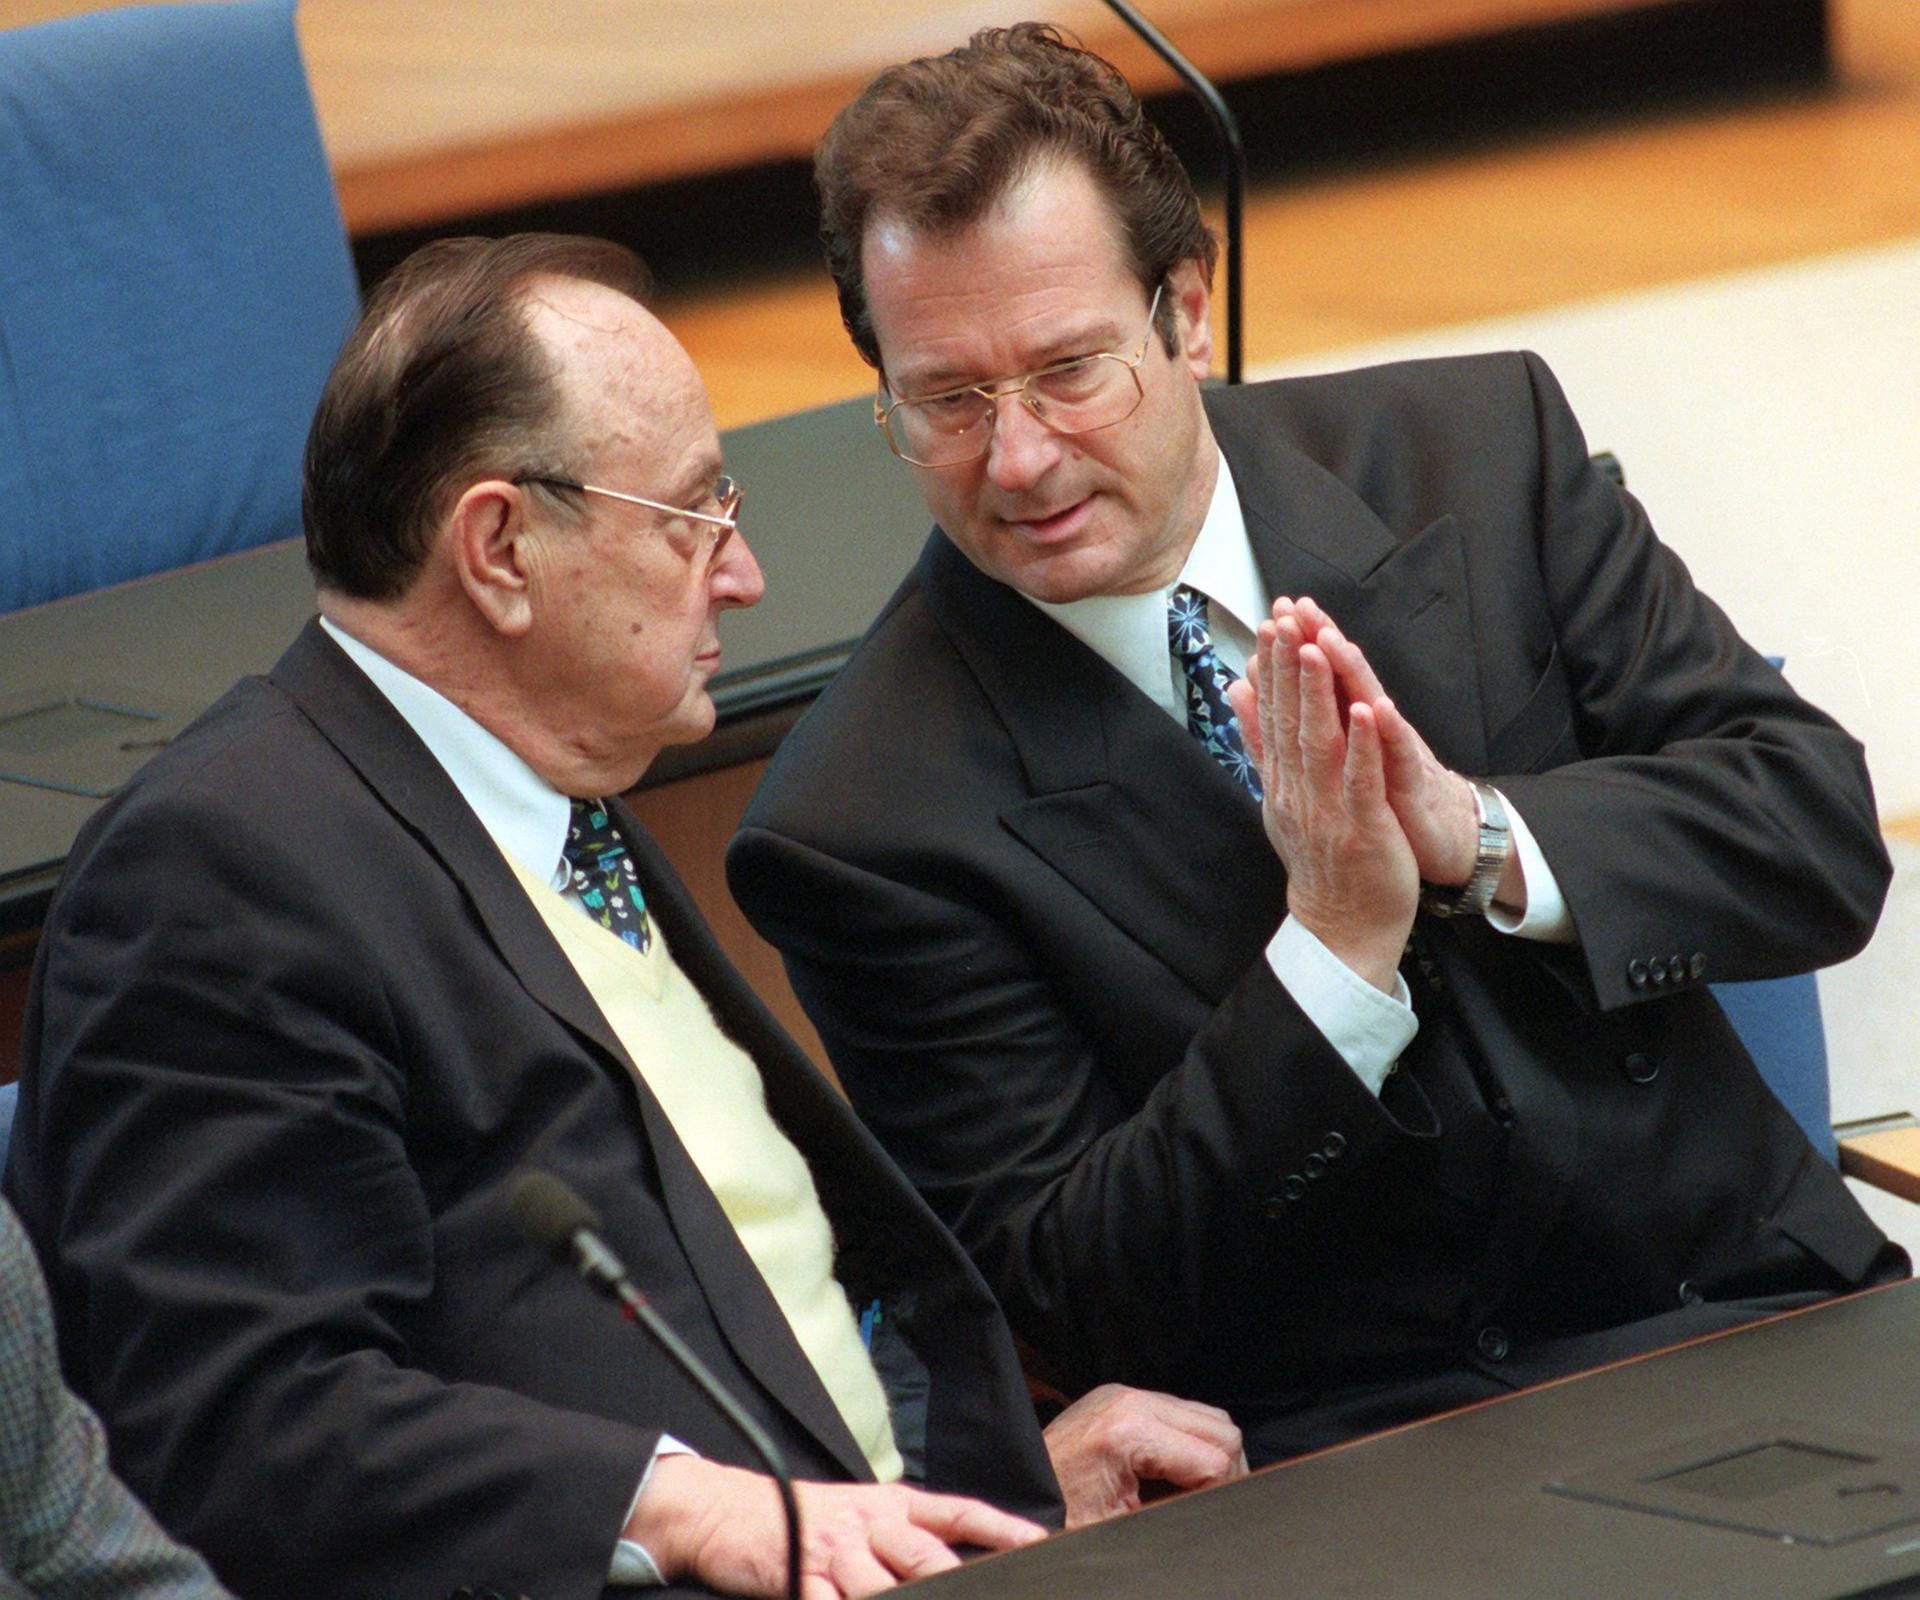 Klaus Kinkel trat 1992 die Nachfolge von Hans-Dietrich Genscher als Außenminister an. Hier sind beide 1997 beim 70. Geburtstag von Genscher zu sehen.